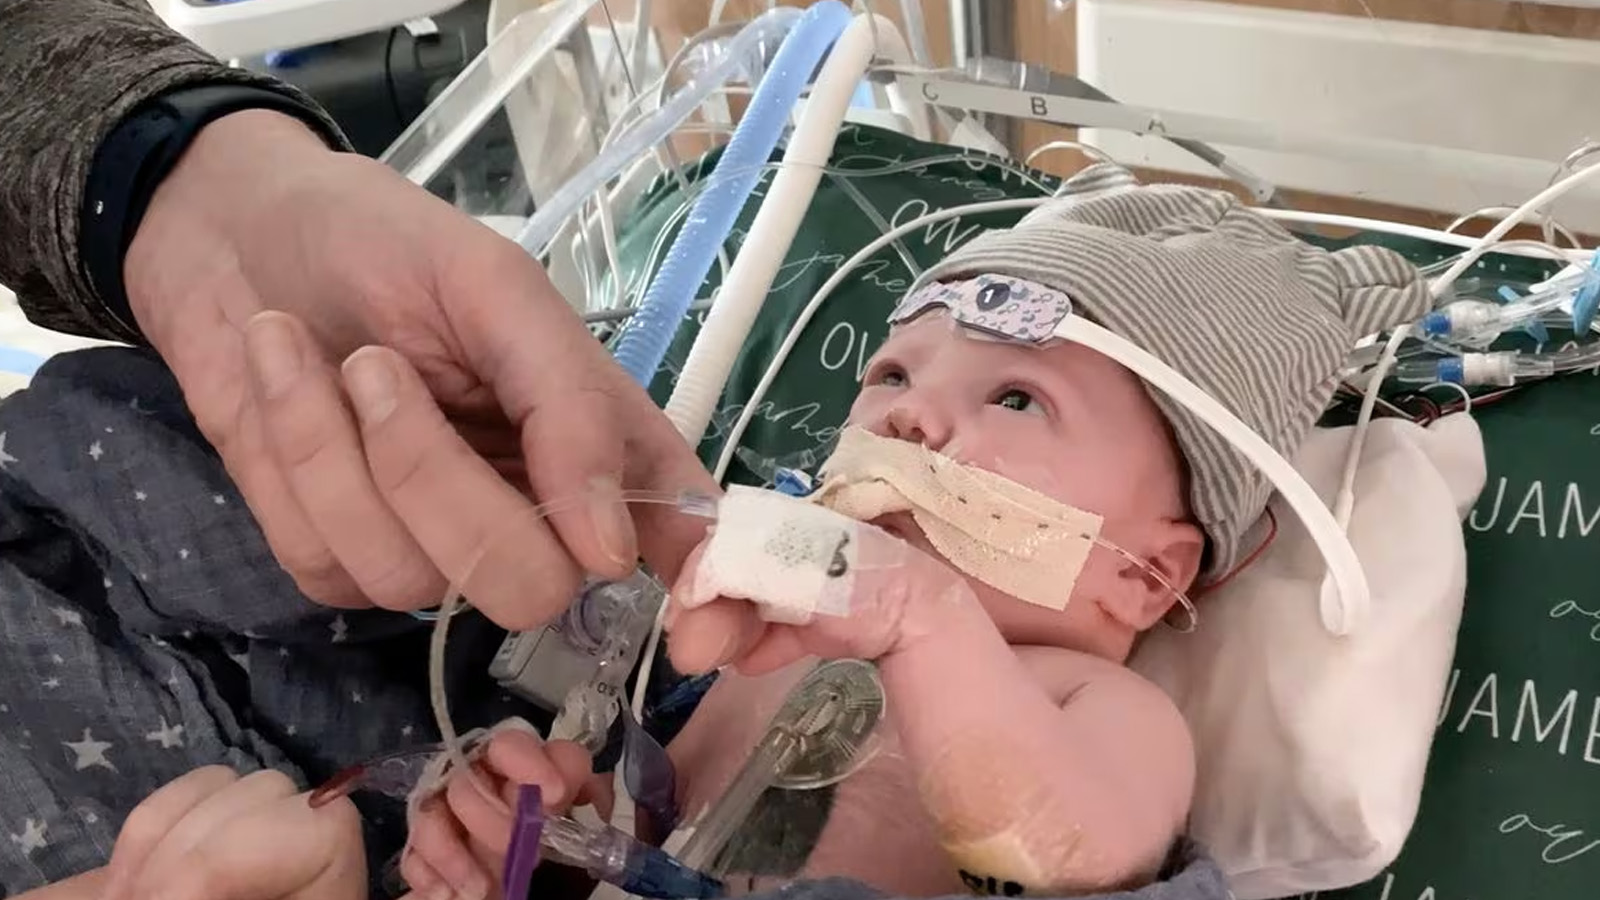 أوين مونرو، يبلغ من العمر بضعة أسابيع فقط، بعد خضوعه لعملية زرع قلب جزئي في مستشفى جامعة ديوك -نورث كارولينا- الولايات المتحدة الأميركية (DUKE HEALTH)